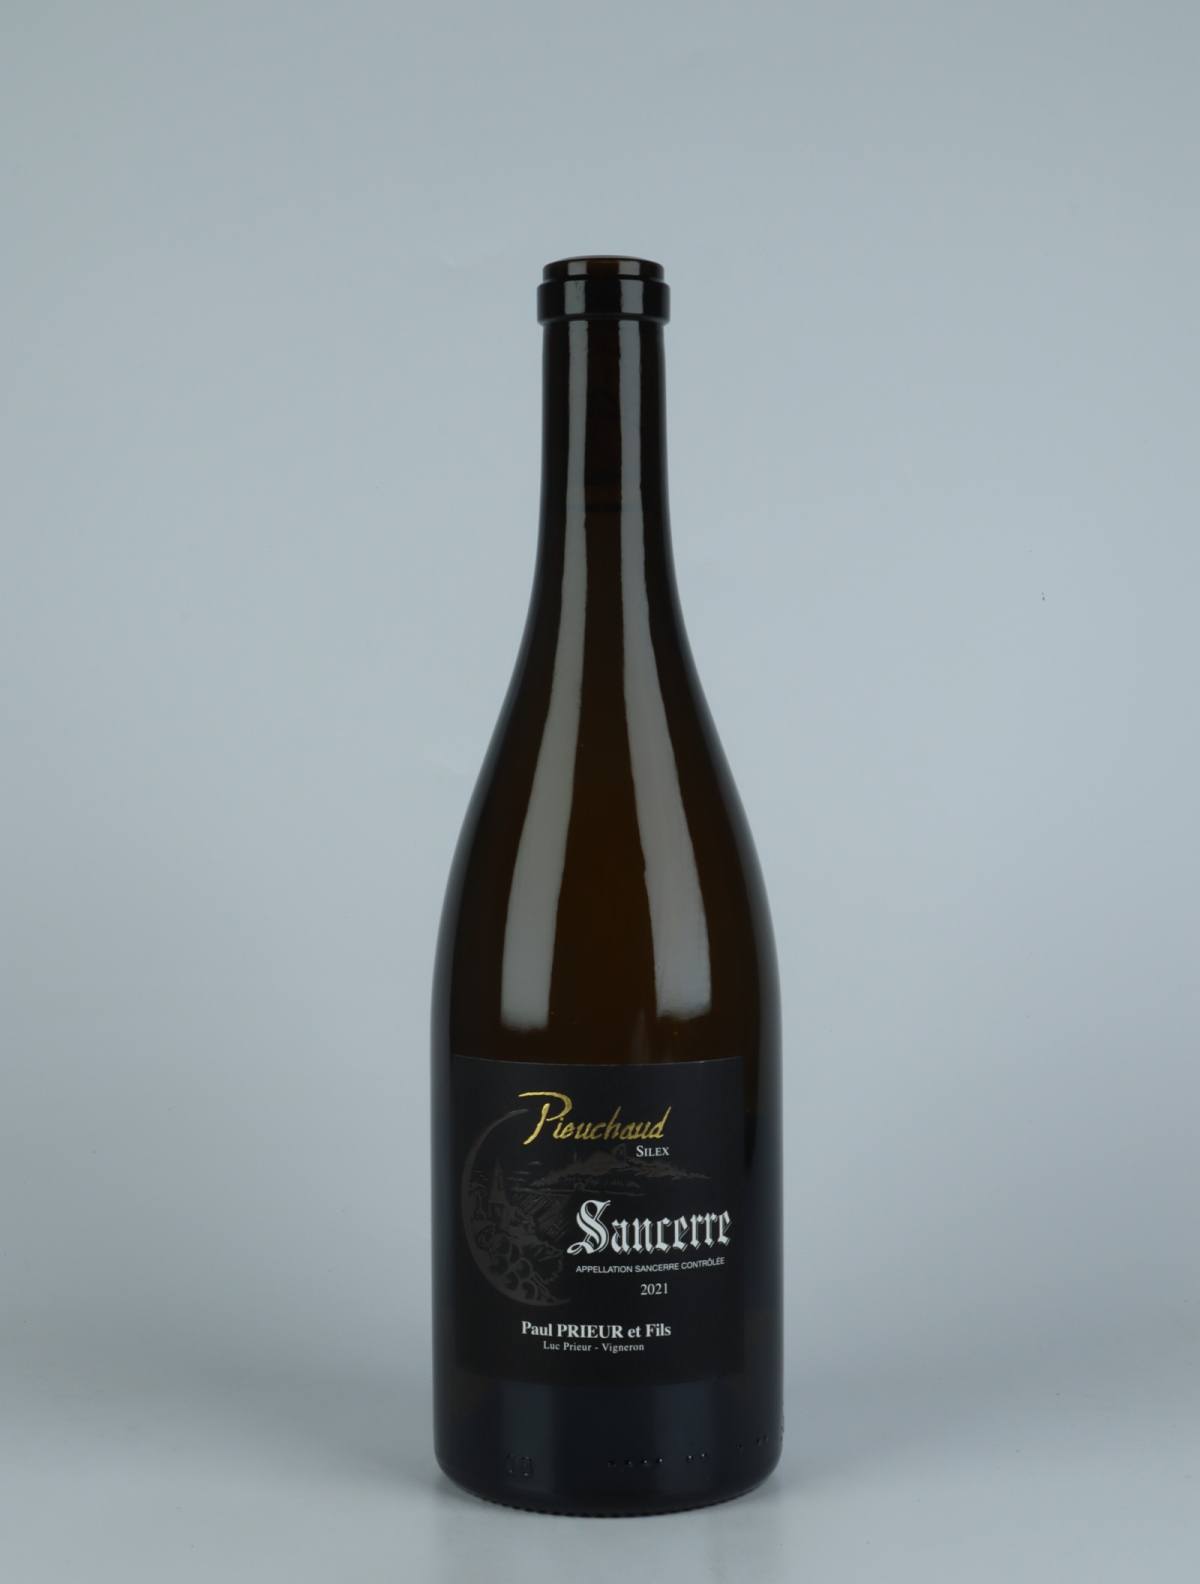 A bottle 2021 Sancerre - Pieuchaud Silex White wine from Paul Prieur et Fils, Loire in France